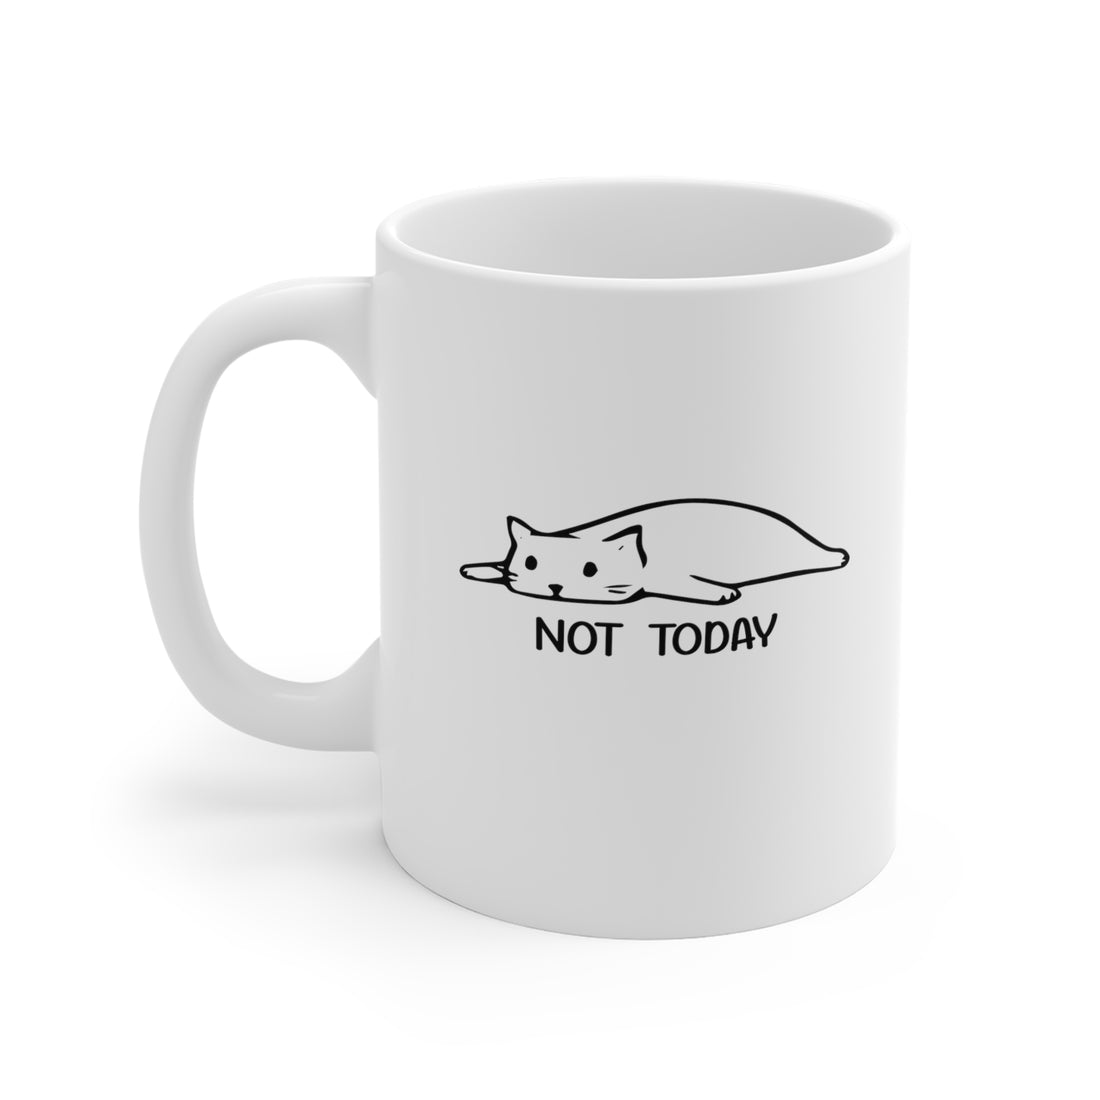 Not Today - White Ceramic Mug 2 sizes Available